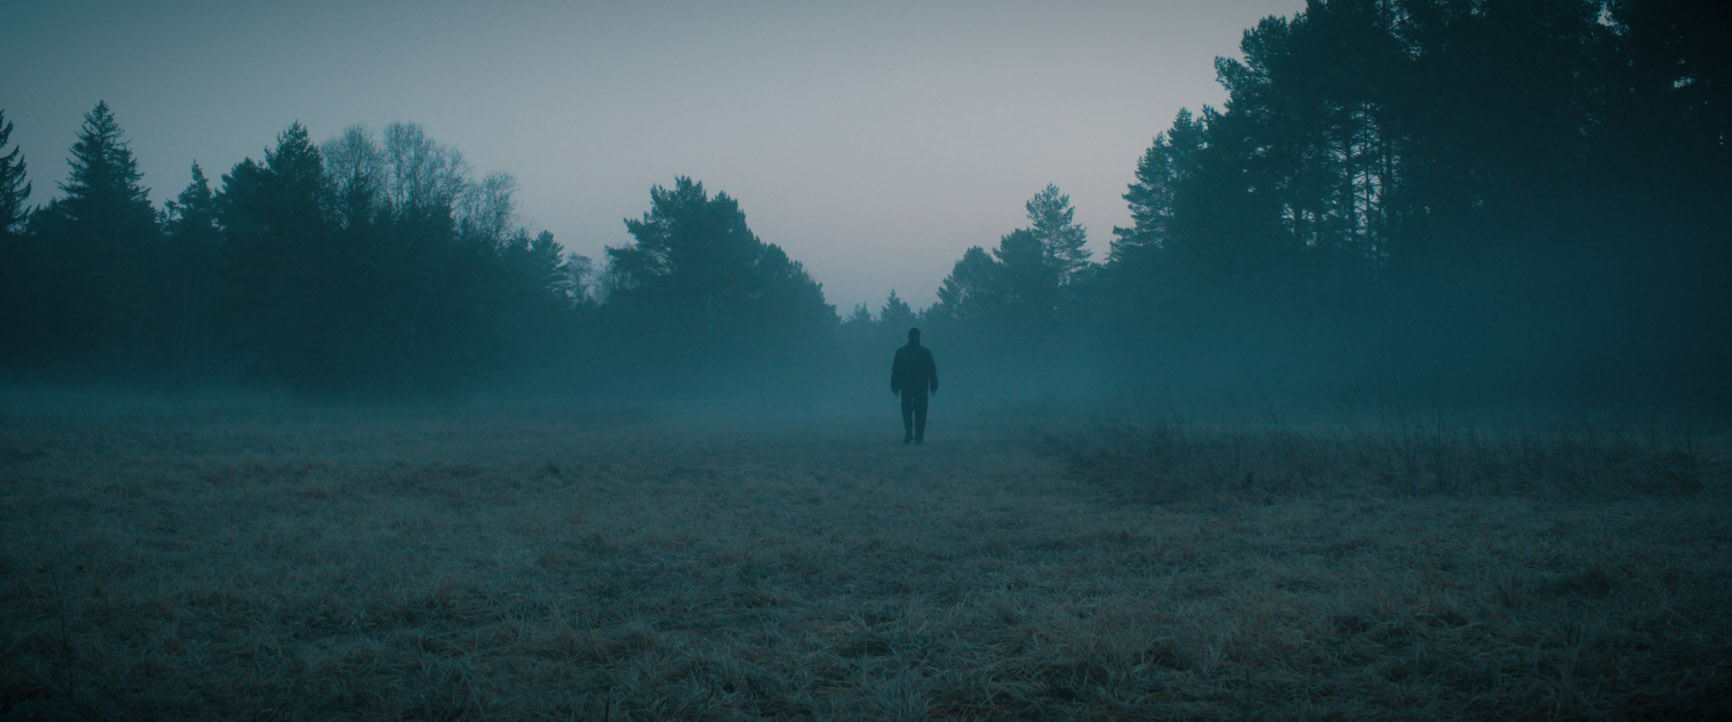 Nebel errdeka auf weitem Feld im Wald Musikvideo zum Lied Rosengarten